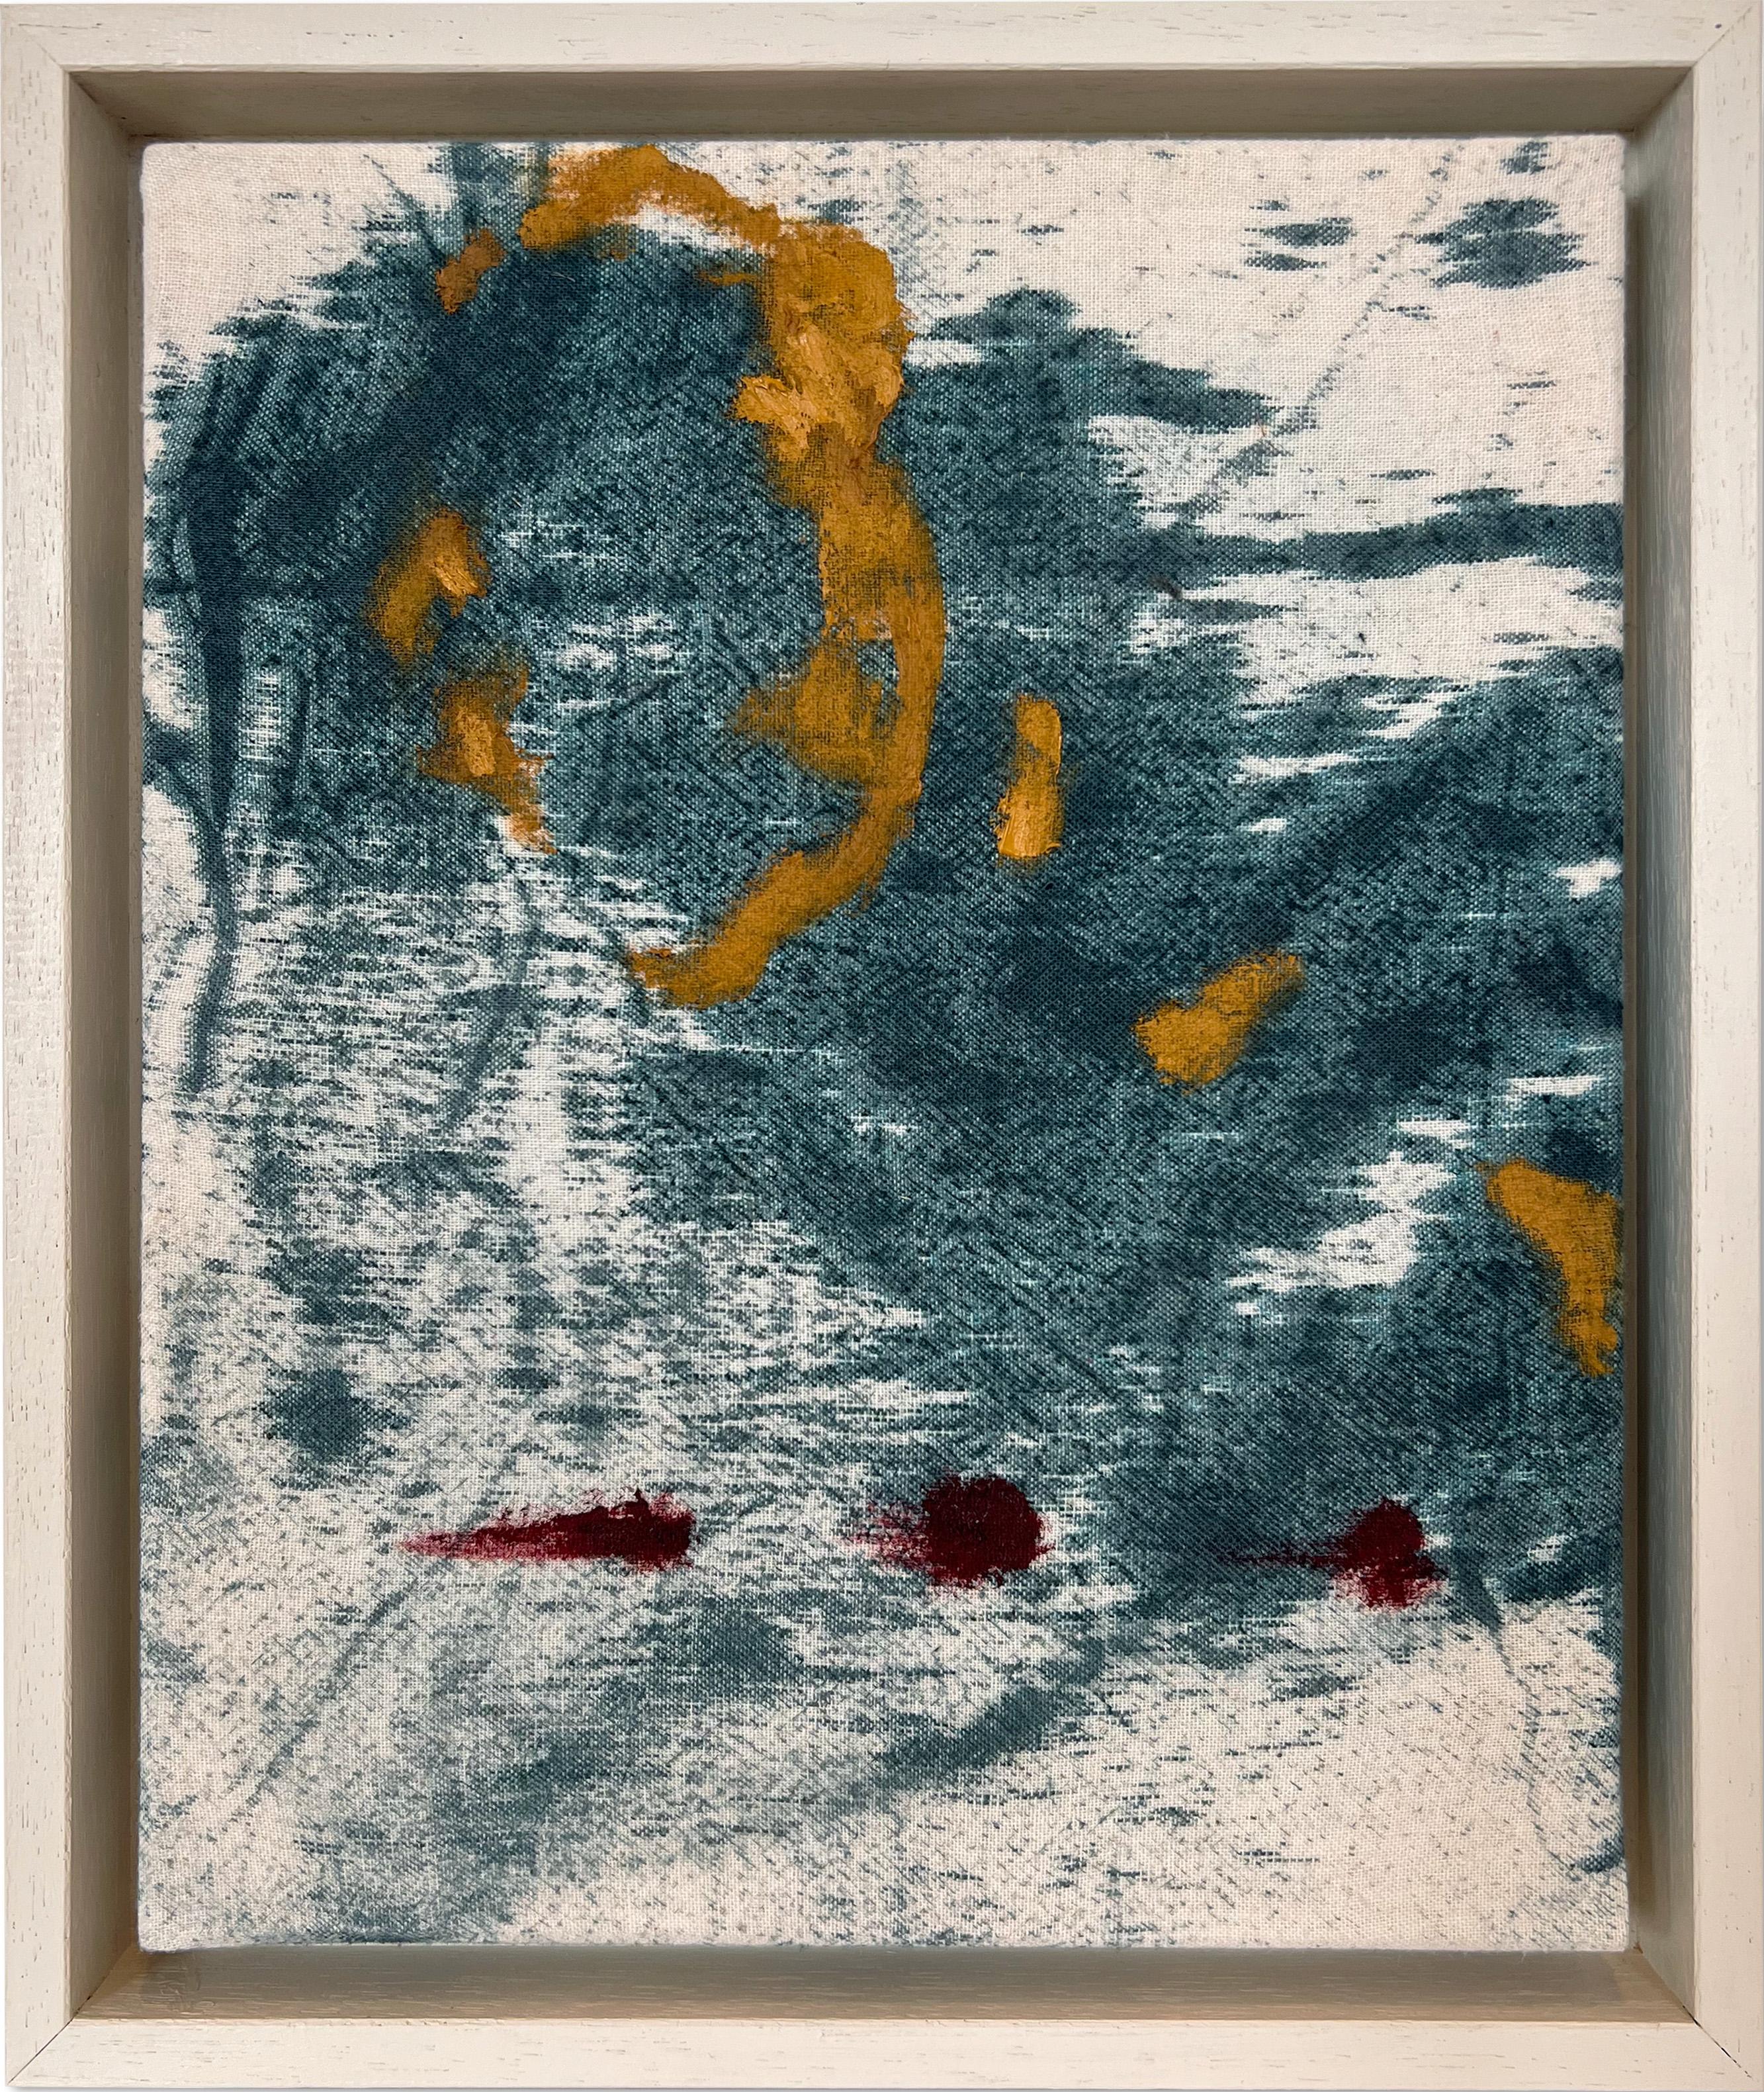 « Day Remains II » (peinture abstraite, teinture bleue, rouge profond, jaune, peinture encadrée, coton)